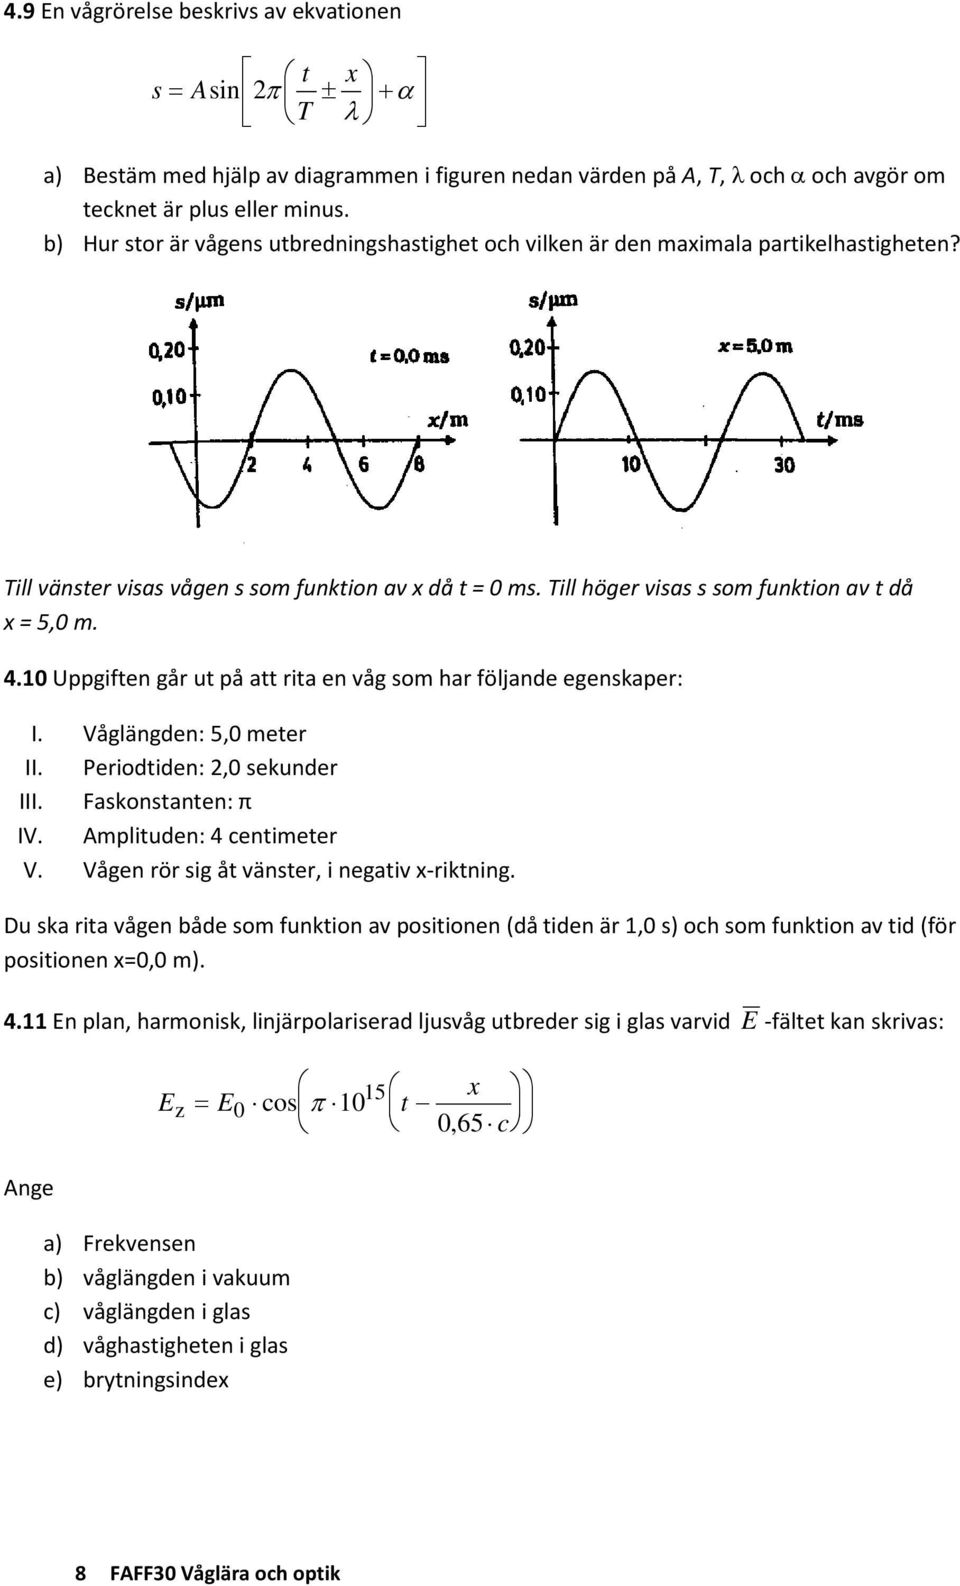 4.10 Uppgiften går ut på att rita en våg som har följande egenskaper: I. Våglängden: 5,0 meter II. Periodtiden: 2,0 sekunder III. Faskonstanten: π IV. Amplituden: 4 centimeter V.